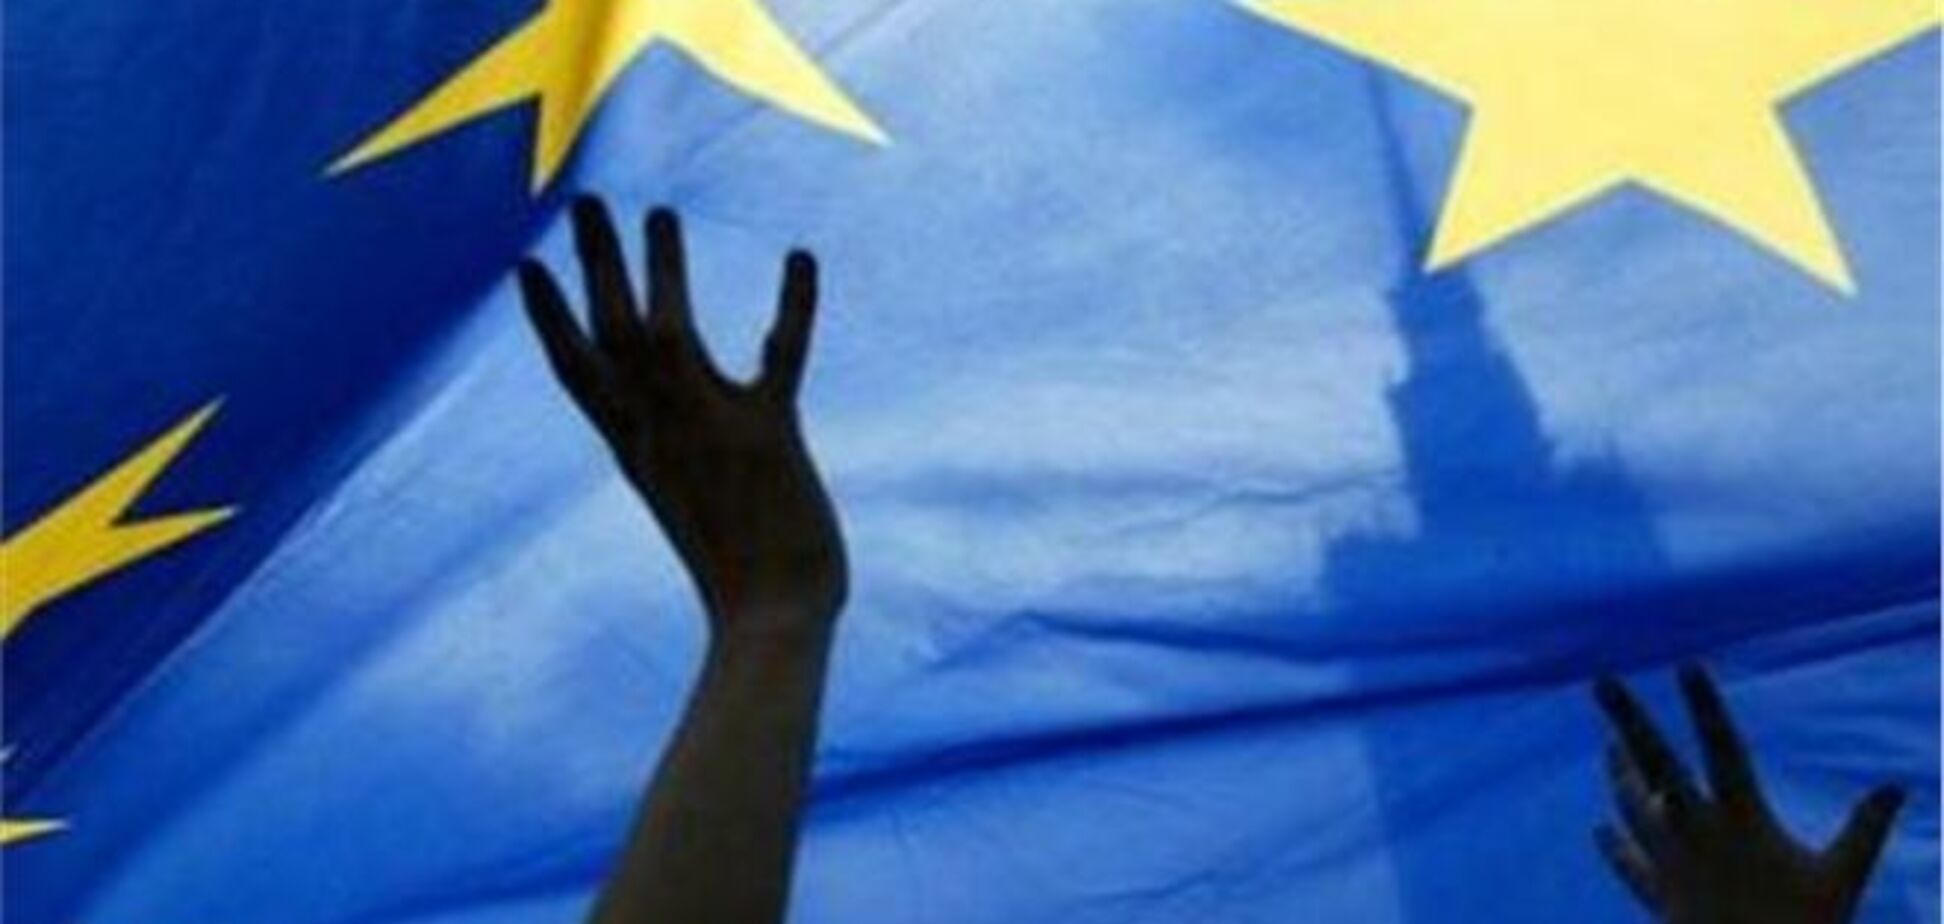 Сторонники евроинтеграции 2 сентября будут пикетировать Раду и Кабмин